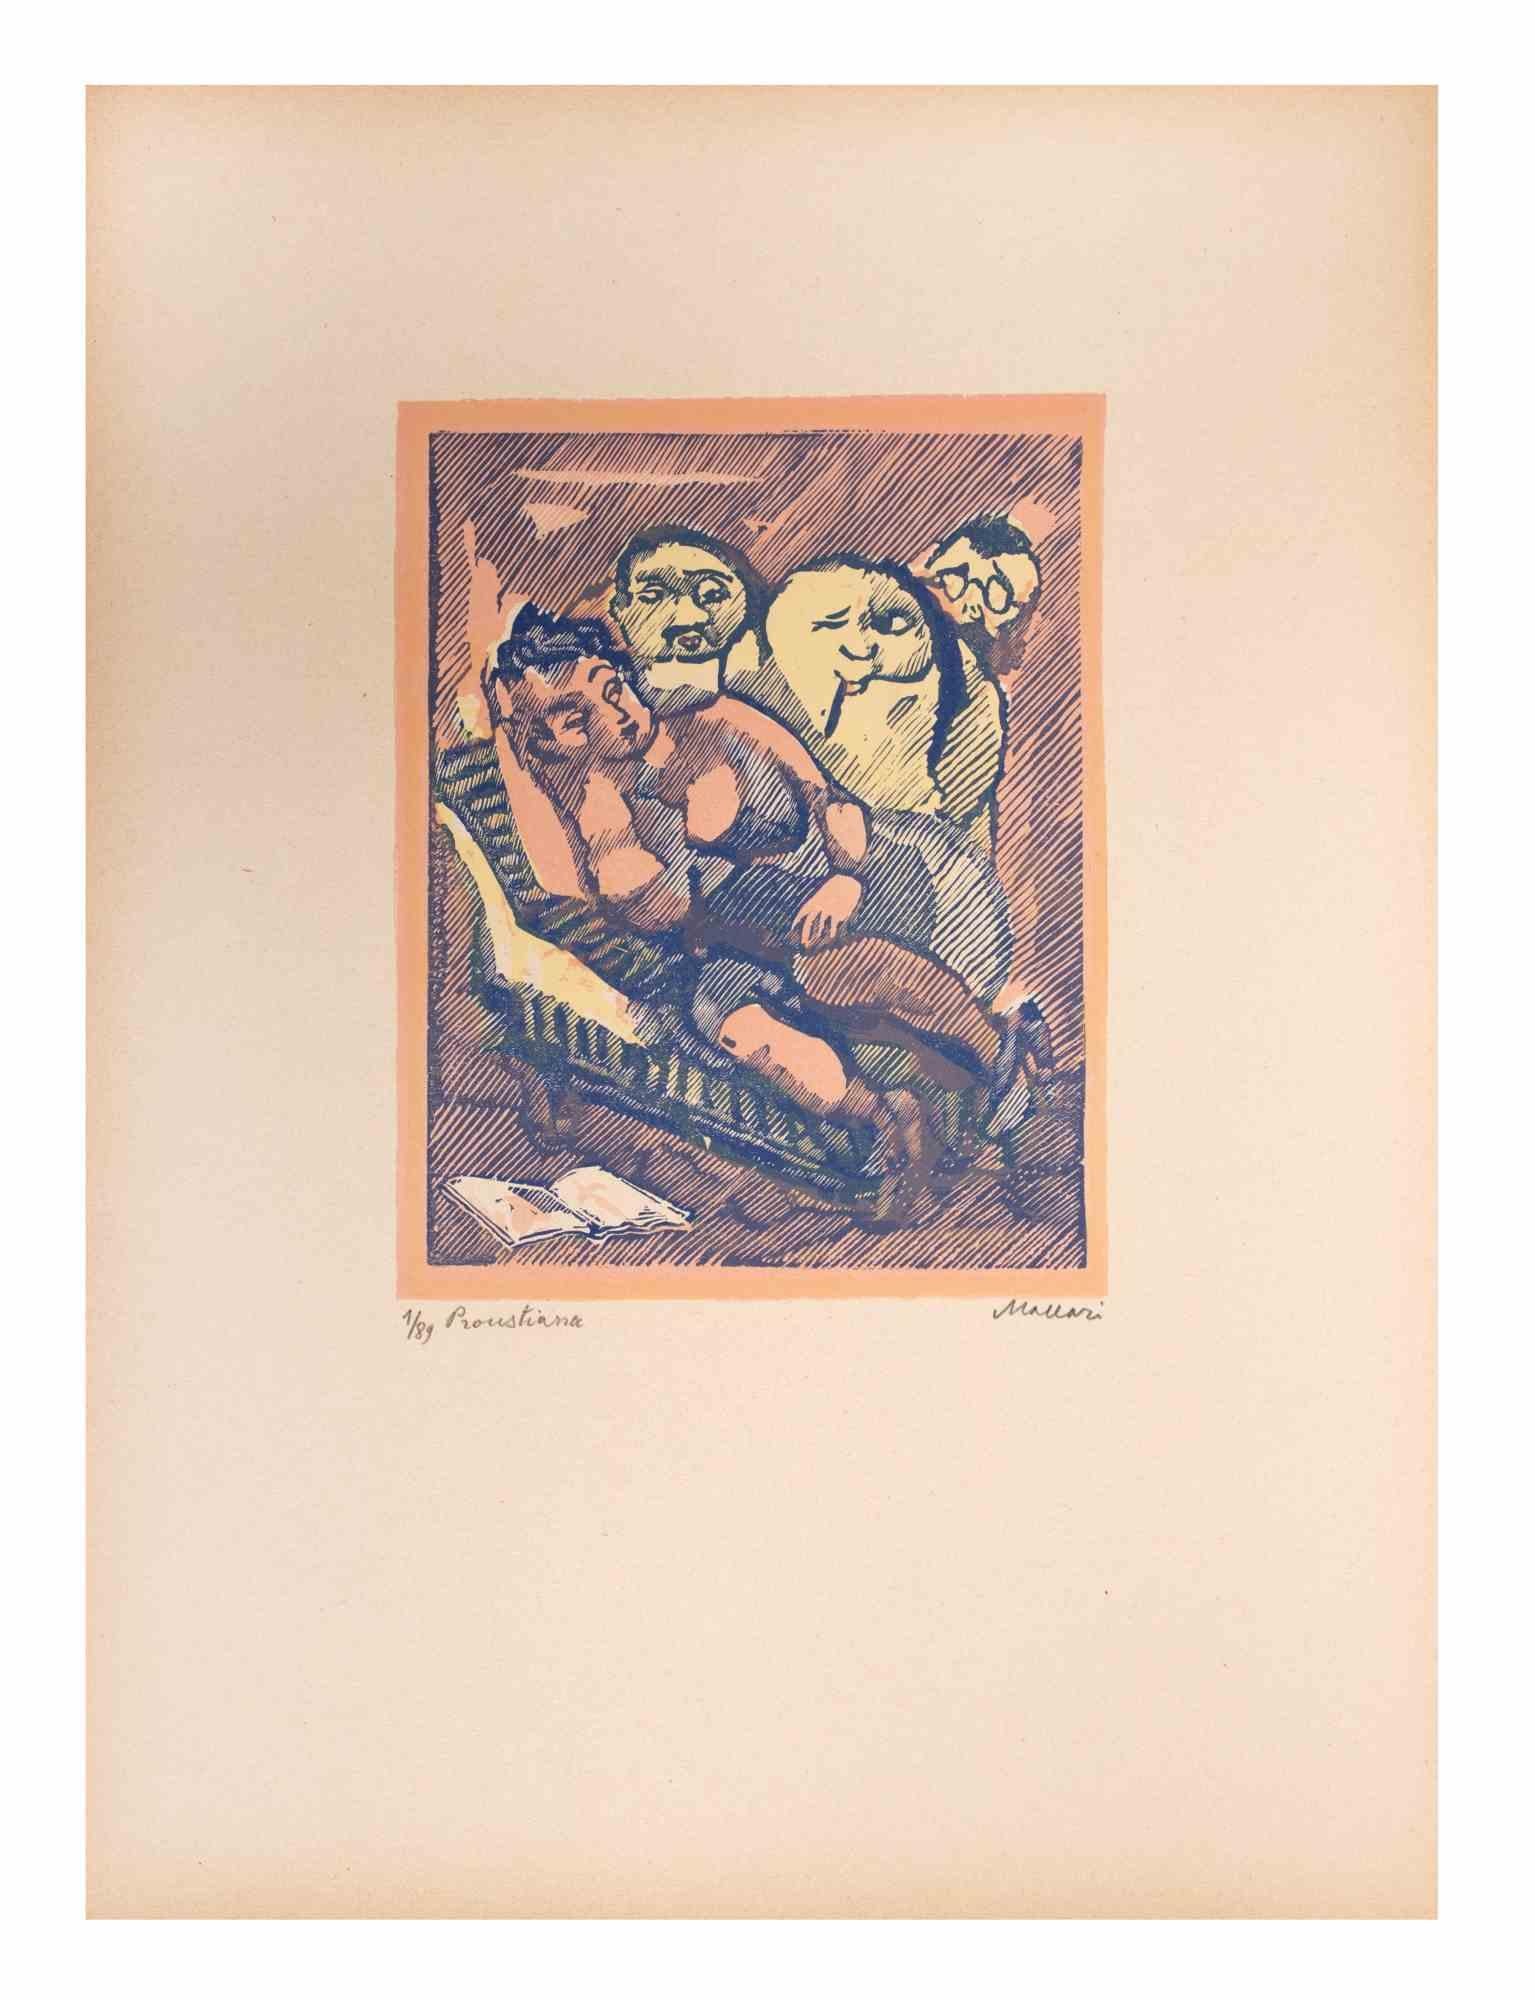 Proustian (Proustiana) ist ein Kunstwerk von Mino Maccari (1924-1989) aus der Mitte des 20. Jahrhunderts.

Farbiger Holzschnitt auf Papier. Unten handsigniert, nummeriert 1/89 Exemplare und am linken Rand betitelt.

Gute Bedingungen.

Mino Maccari